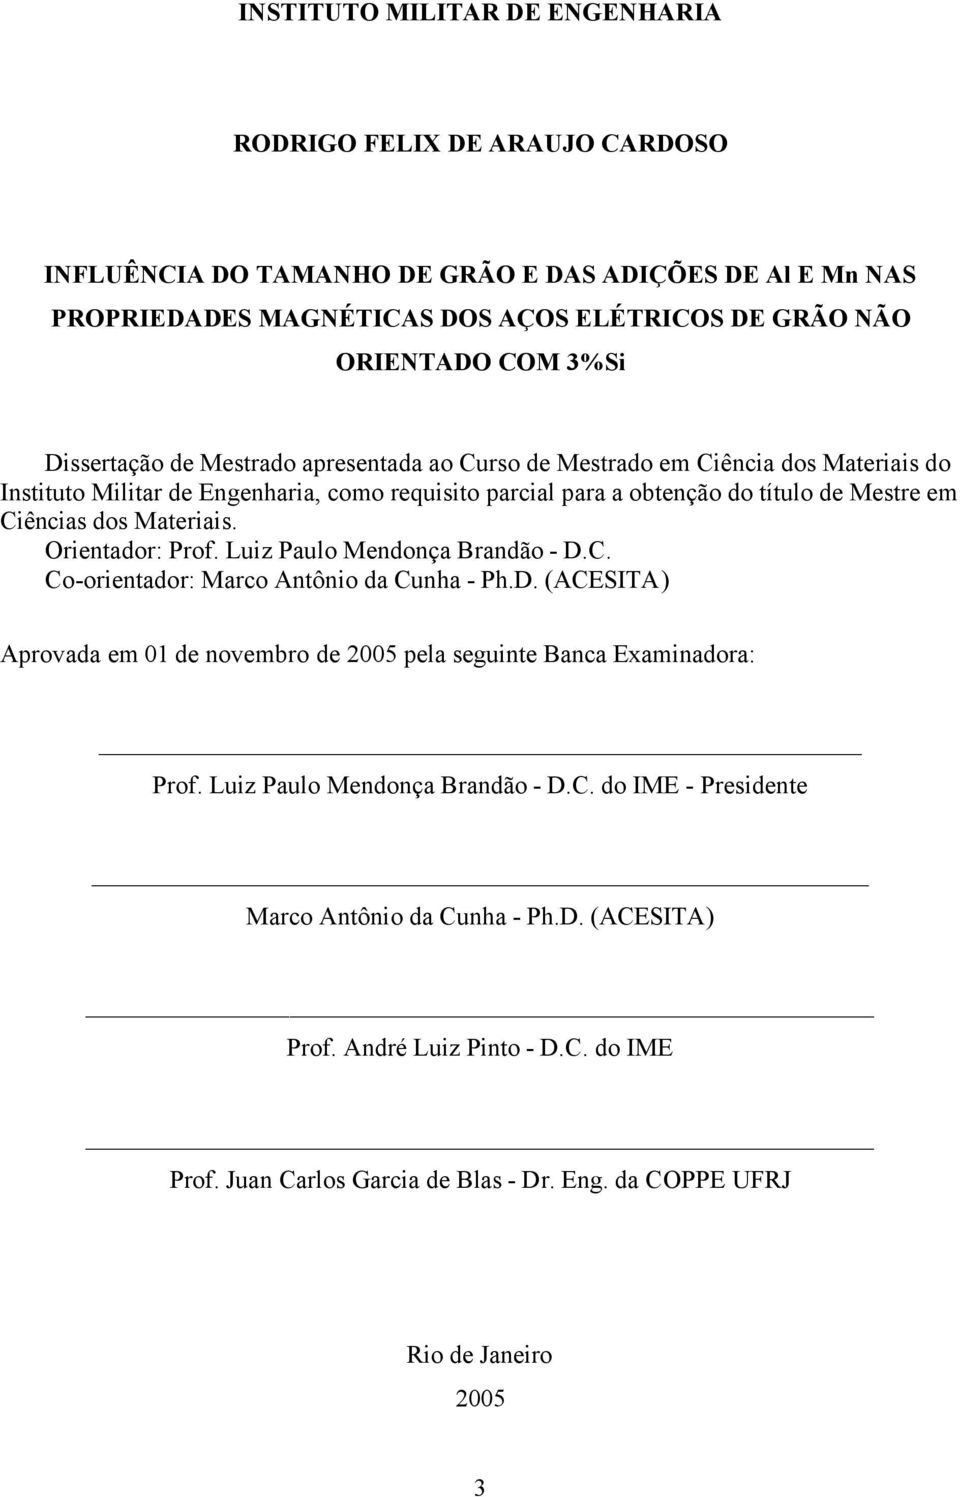 Materiais. Orientador: Prof. Luiz Paulo Mendonça Brandão - D.C. Co-orientador: Marco Antônio da Cunha - Ph.D. (ACESITA) Aprovada em 01 de novembro de 2005 pela seguinte Banca Examinadora: Prof.